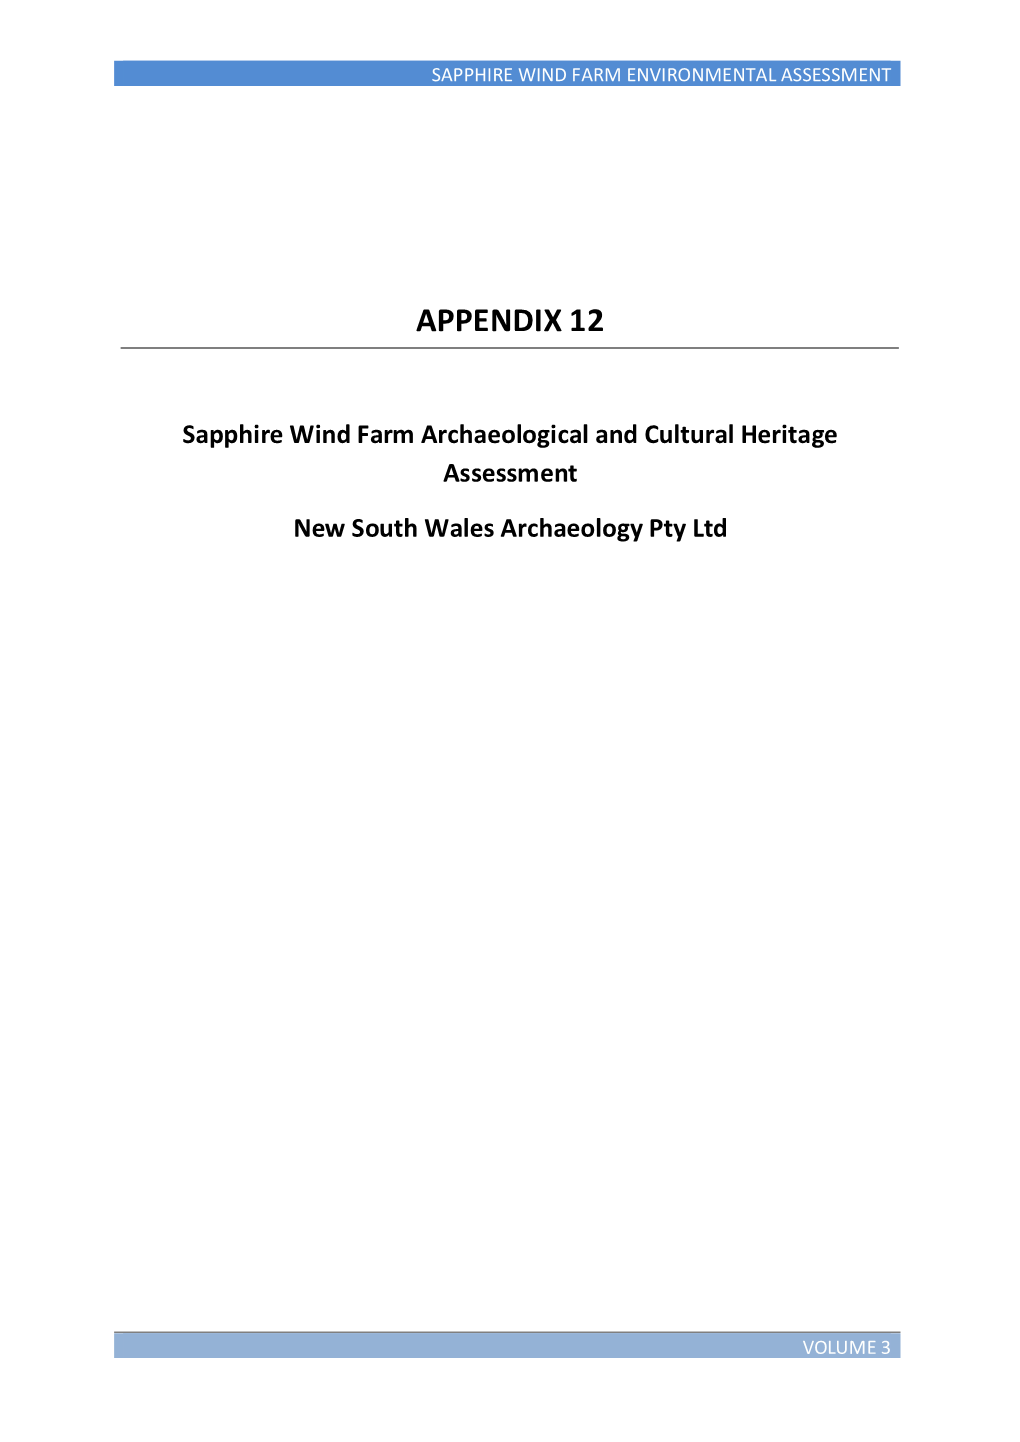 Appendix 12 Heritage Download